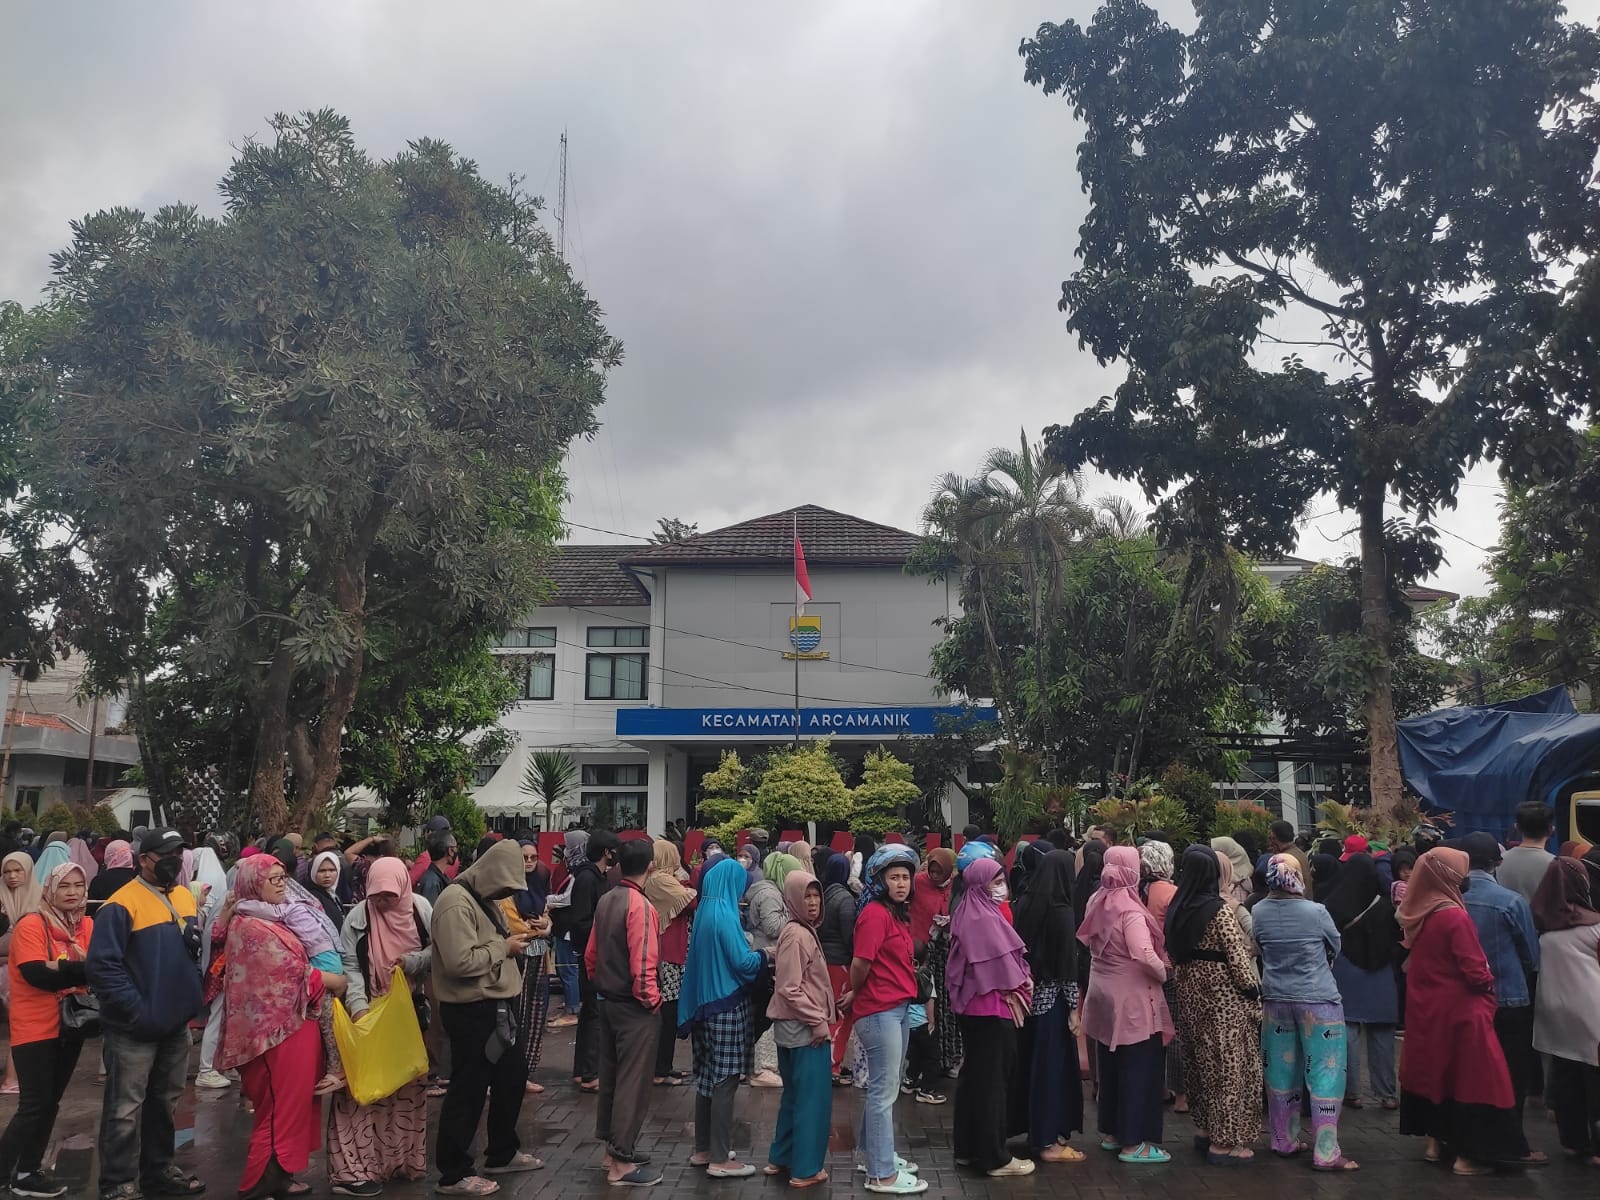 BERBURU HARGA MURAH: Antusiasme warga saat di gelarnya Operasi Pasar murah beras medium, di Kecamatan Arcamanik, Kota Bandung, Jumat (24/2). (SADAM HUSEN SOLEH RAMDHANI/JABAR EKSPRES)